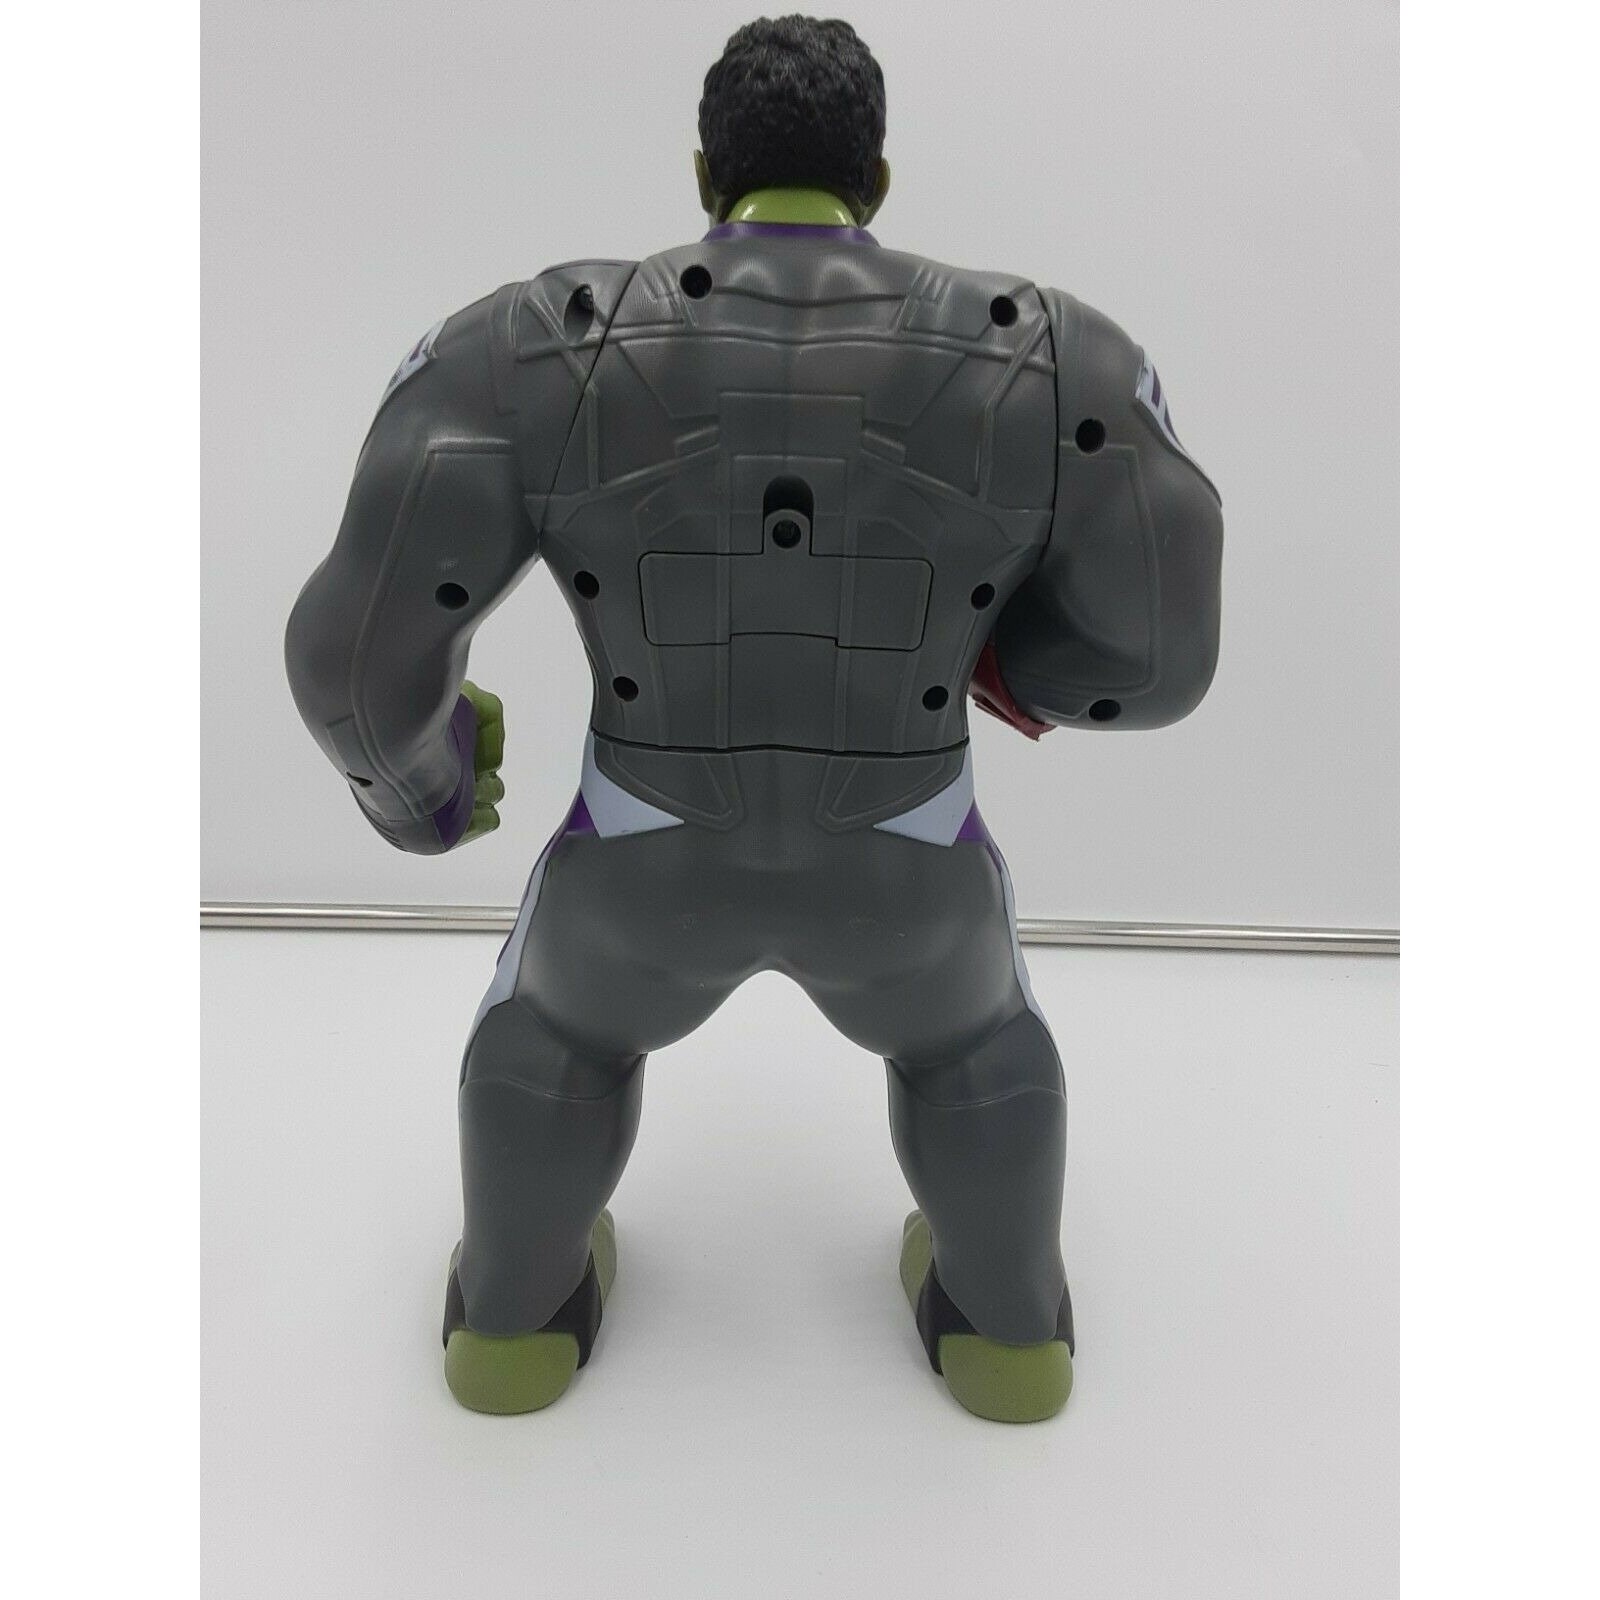 Marvel Avengers Power Punch Hulk Infinity Glove 20 Phrases Sounds